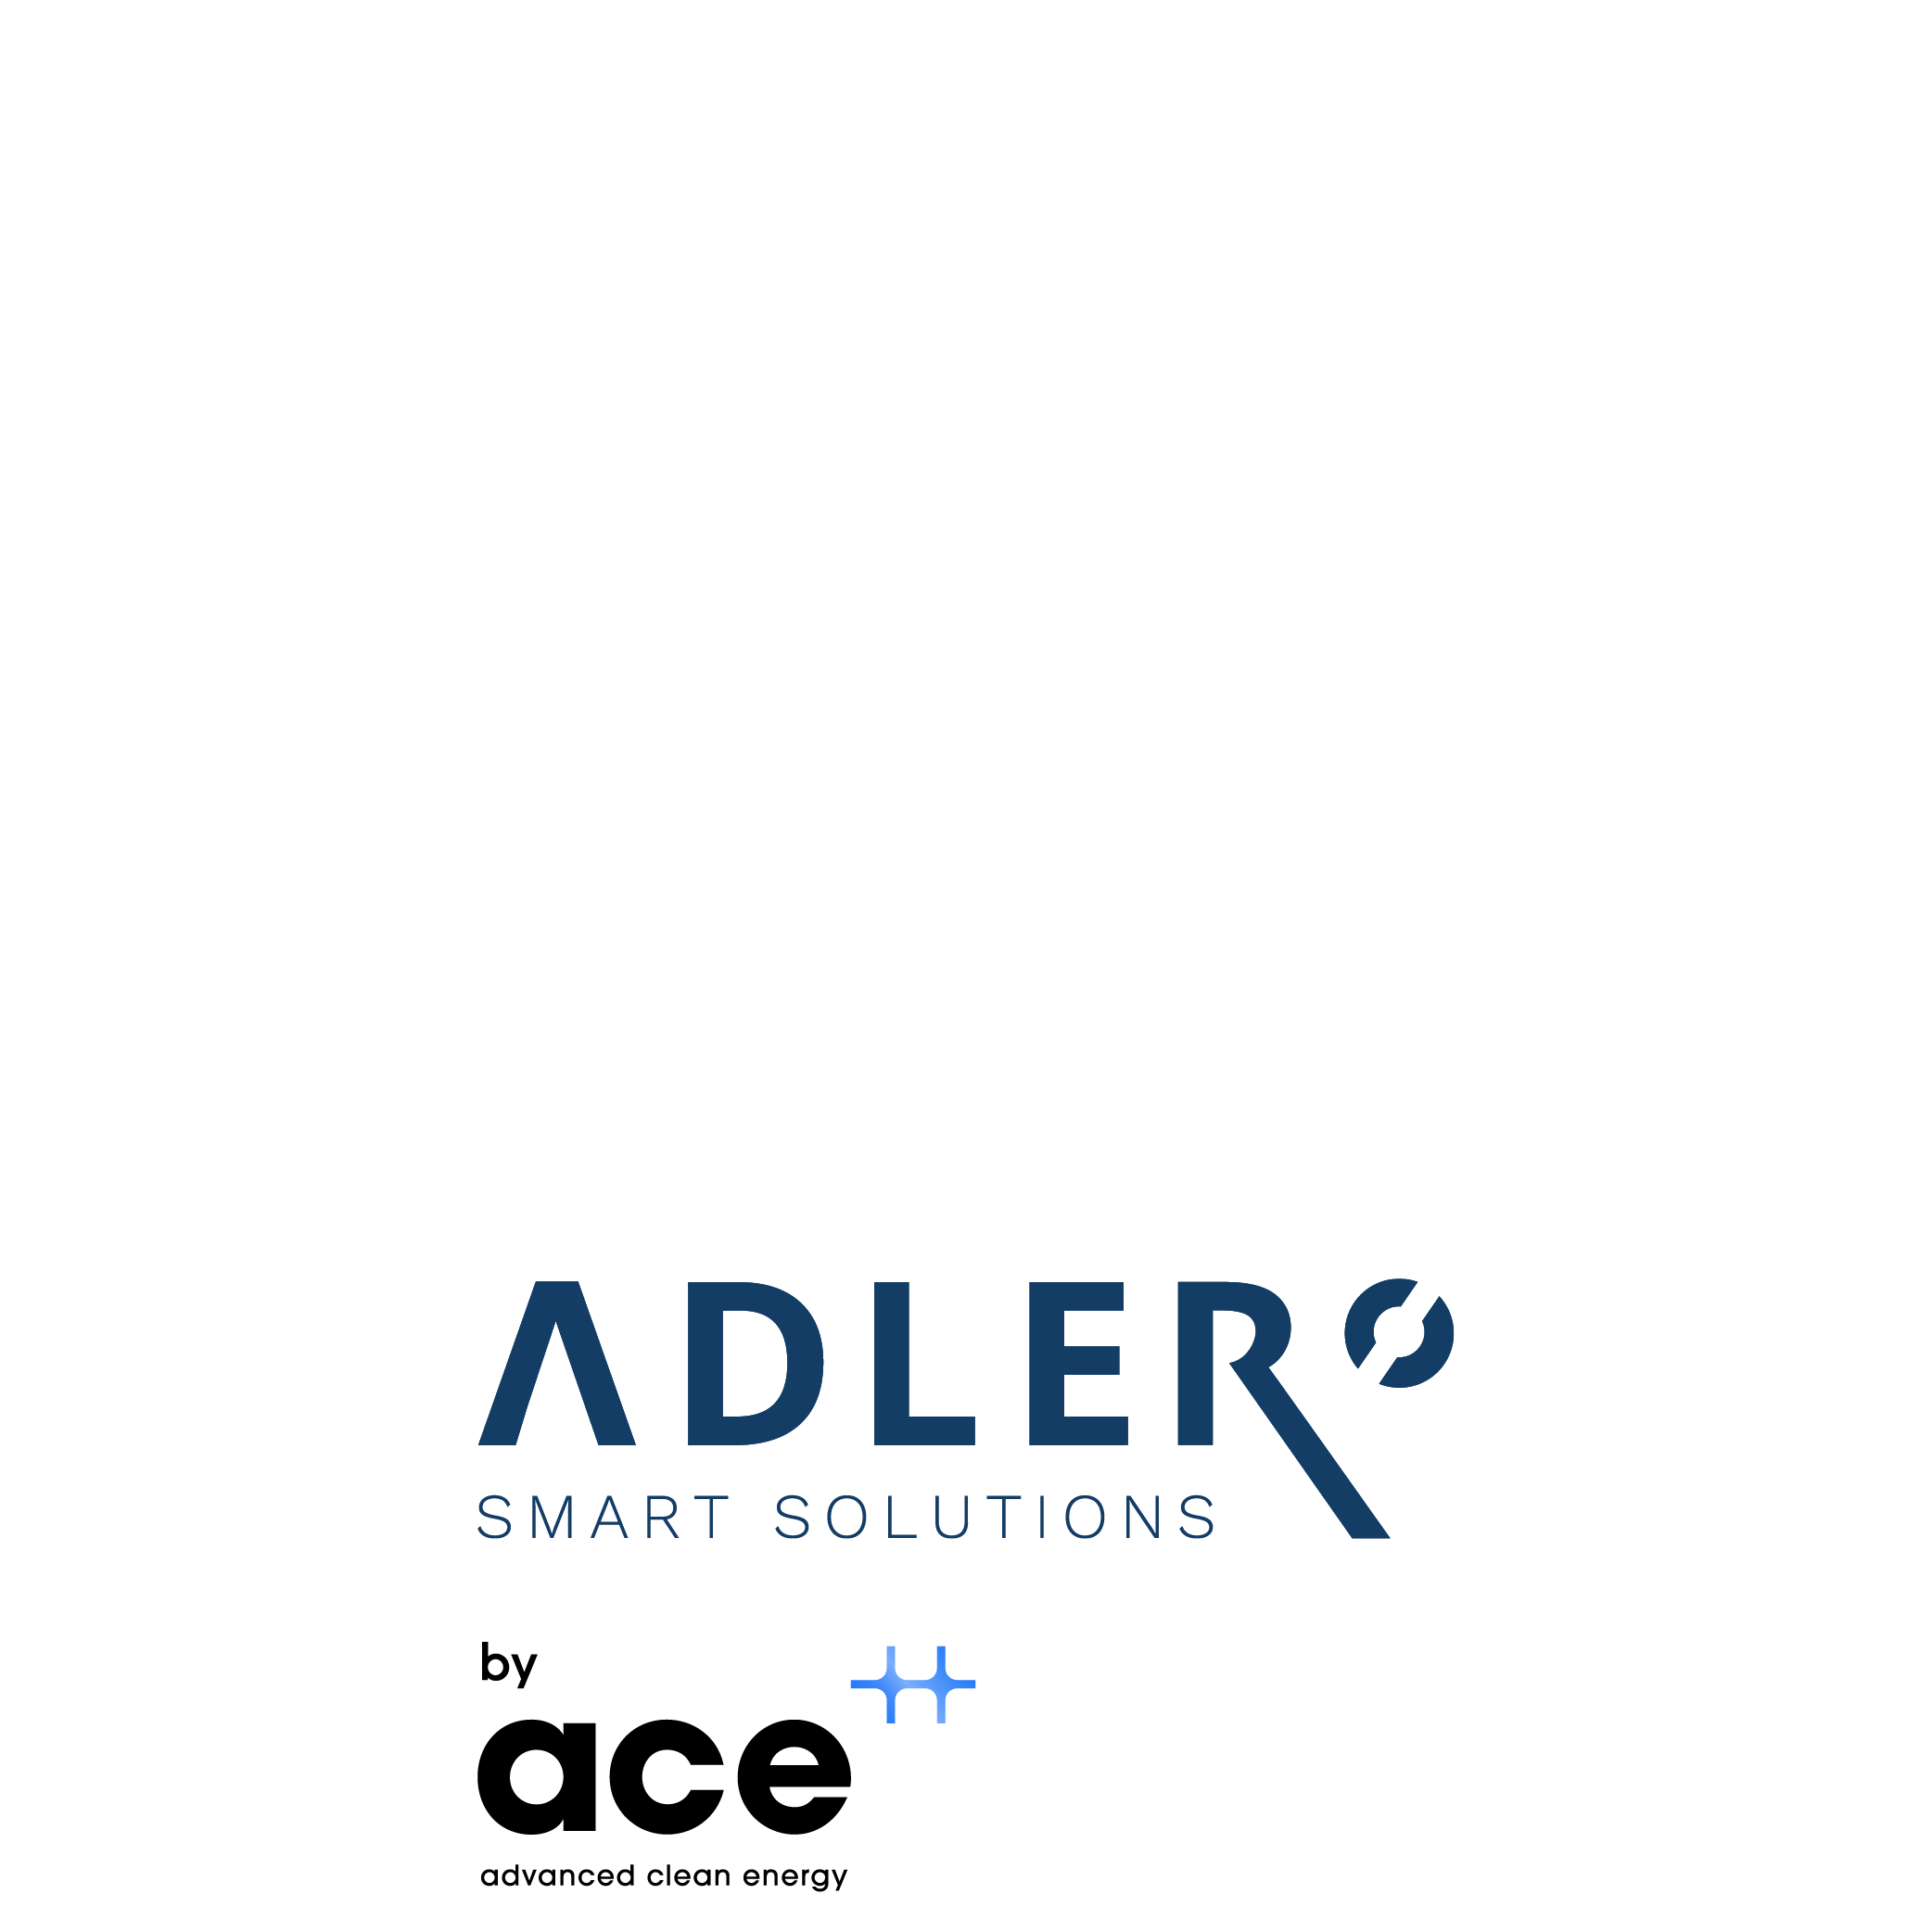 ADLER Smart Solutions